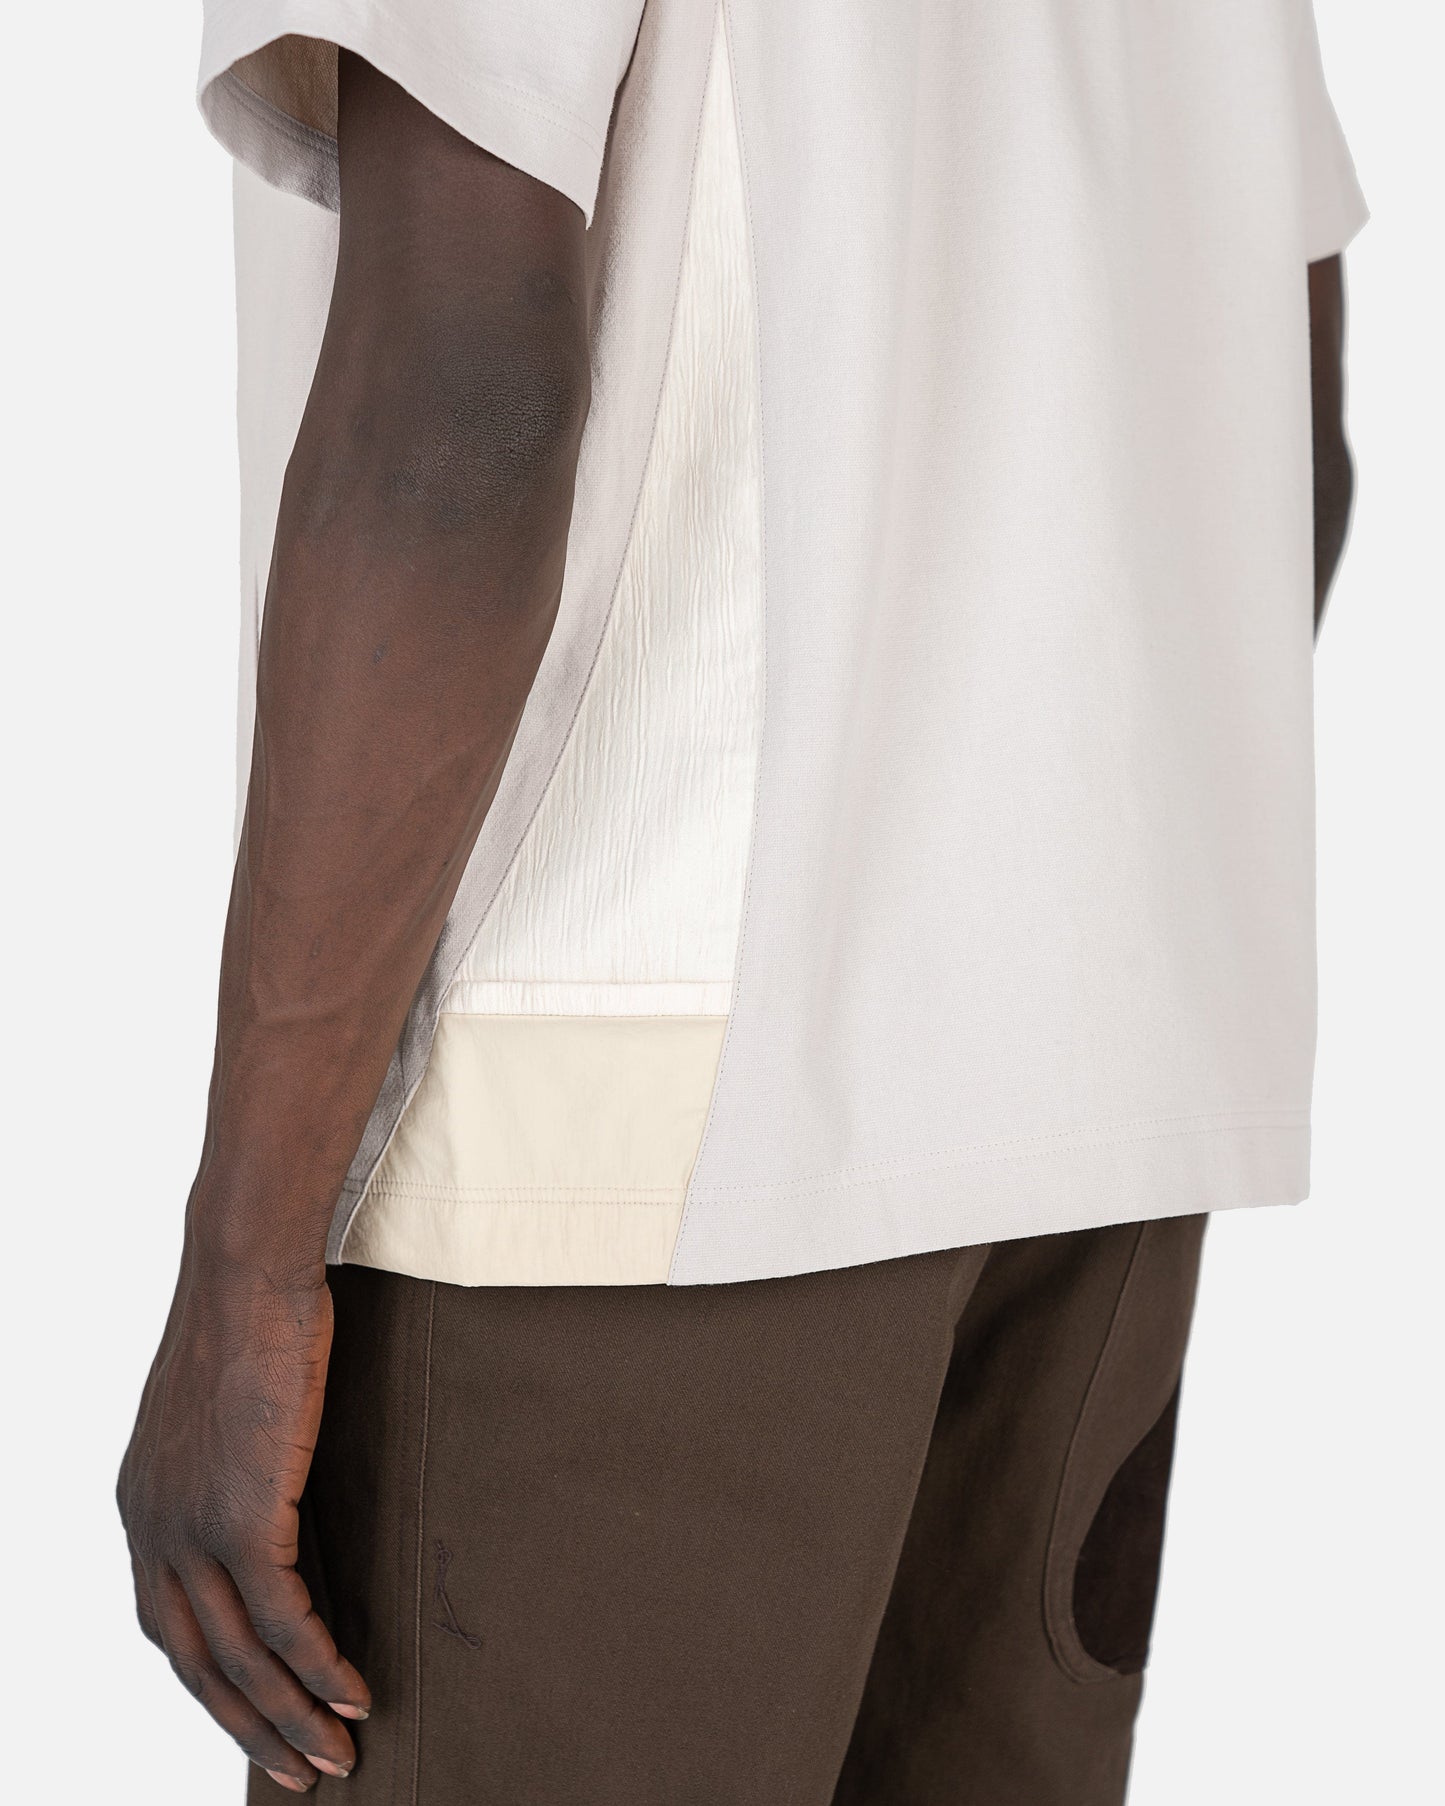 XLIM Men's Shirts Ep. 2 01 Shirt in Ivory